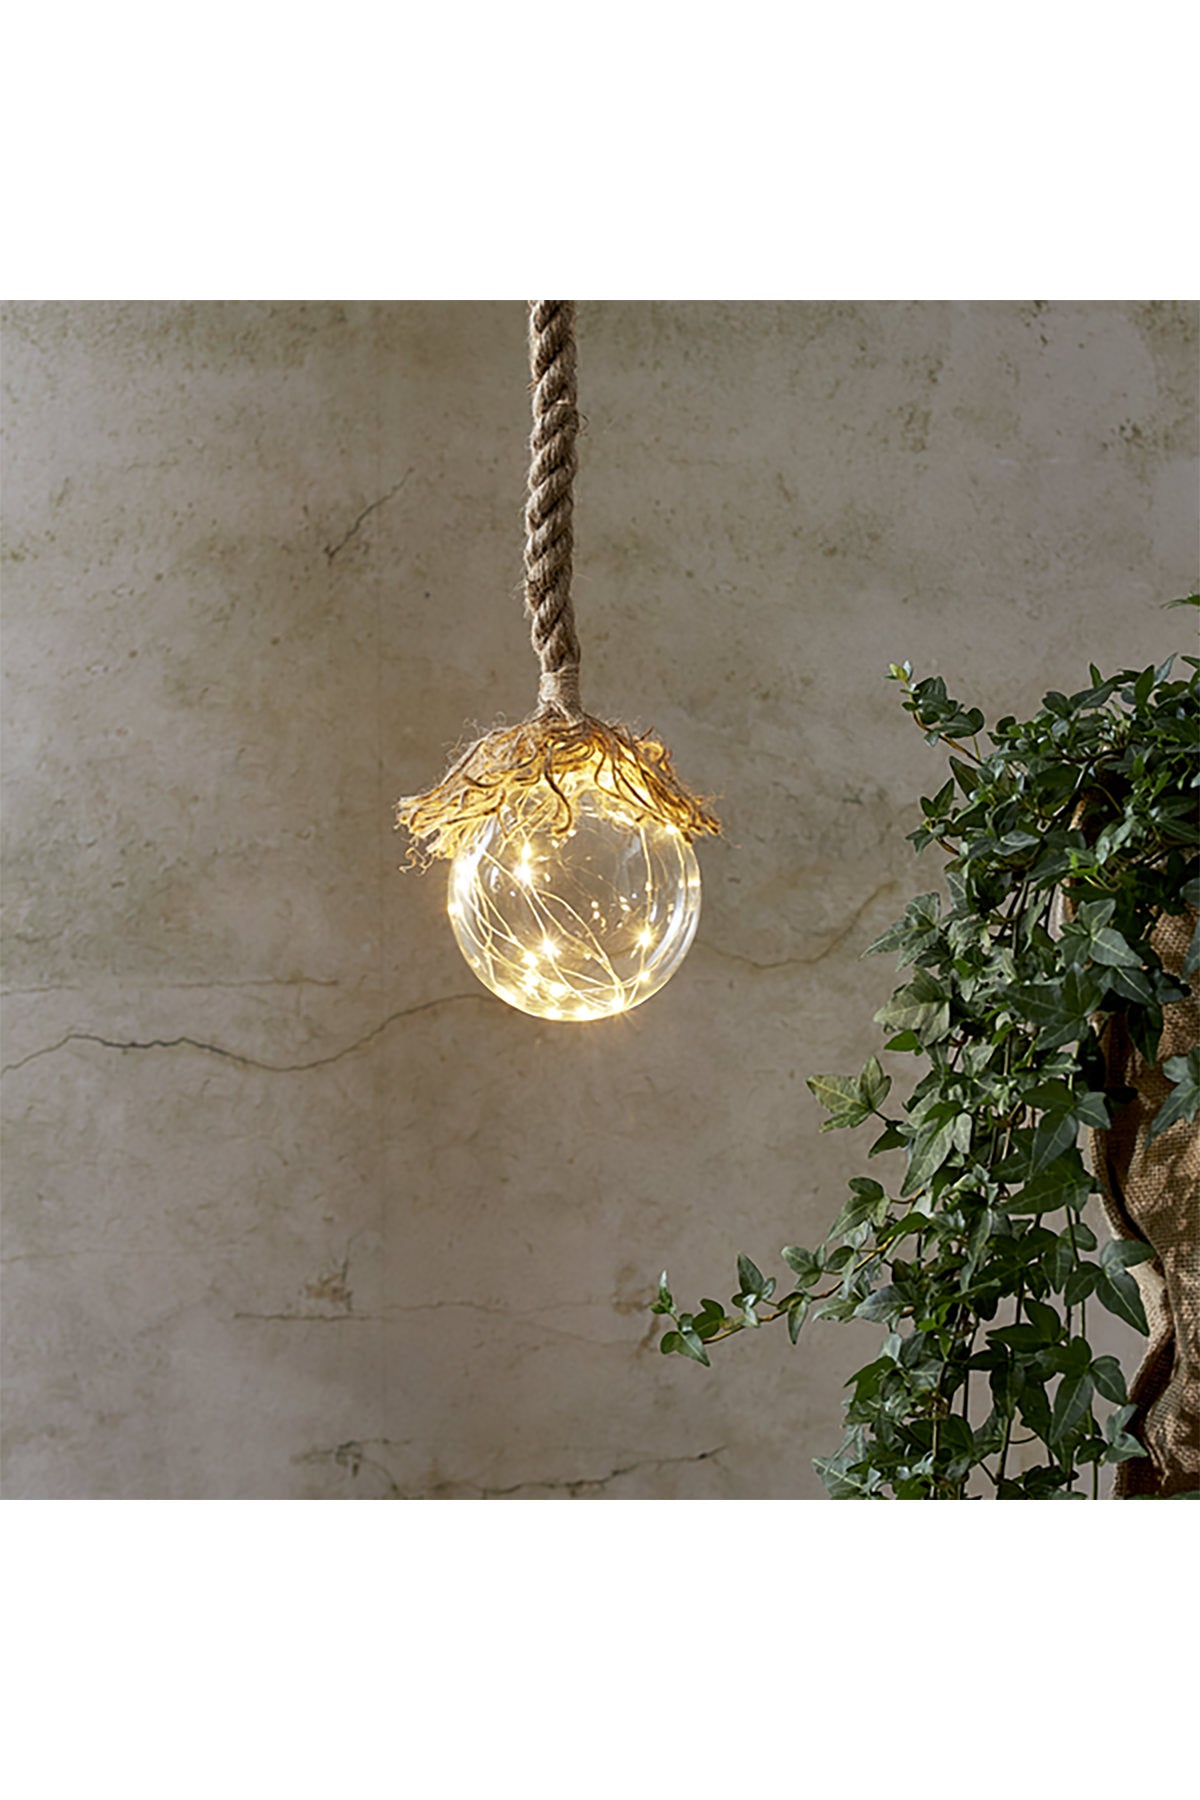 Glasdekorationsleuchte Jutta | 1,4 m Seil, 10cm Durchmesser